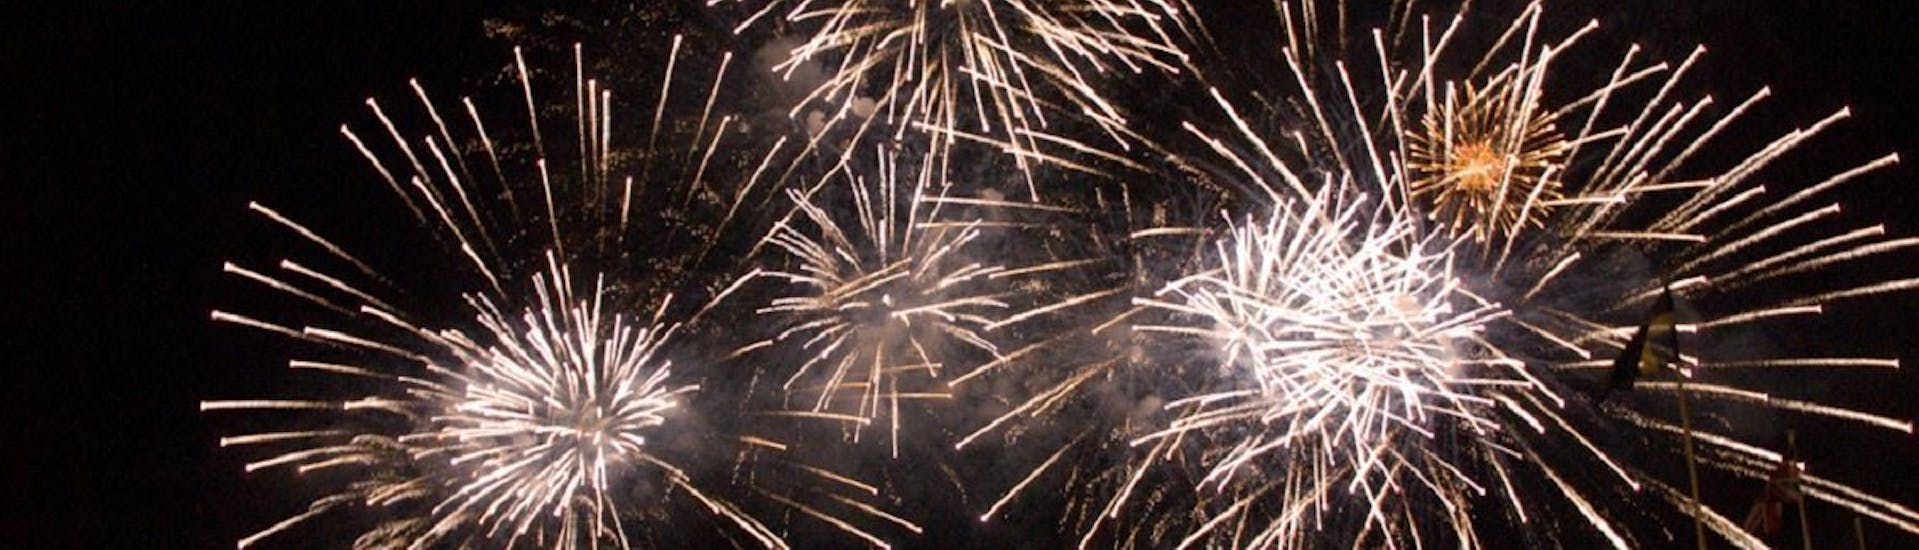 Prachtige foto van het vuurwerk van het feest van Maria Hemelvaart dat je kunt bewonderen tijdens de Boottocht van Sorrento naar Positano met vuurwerk.